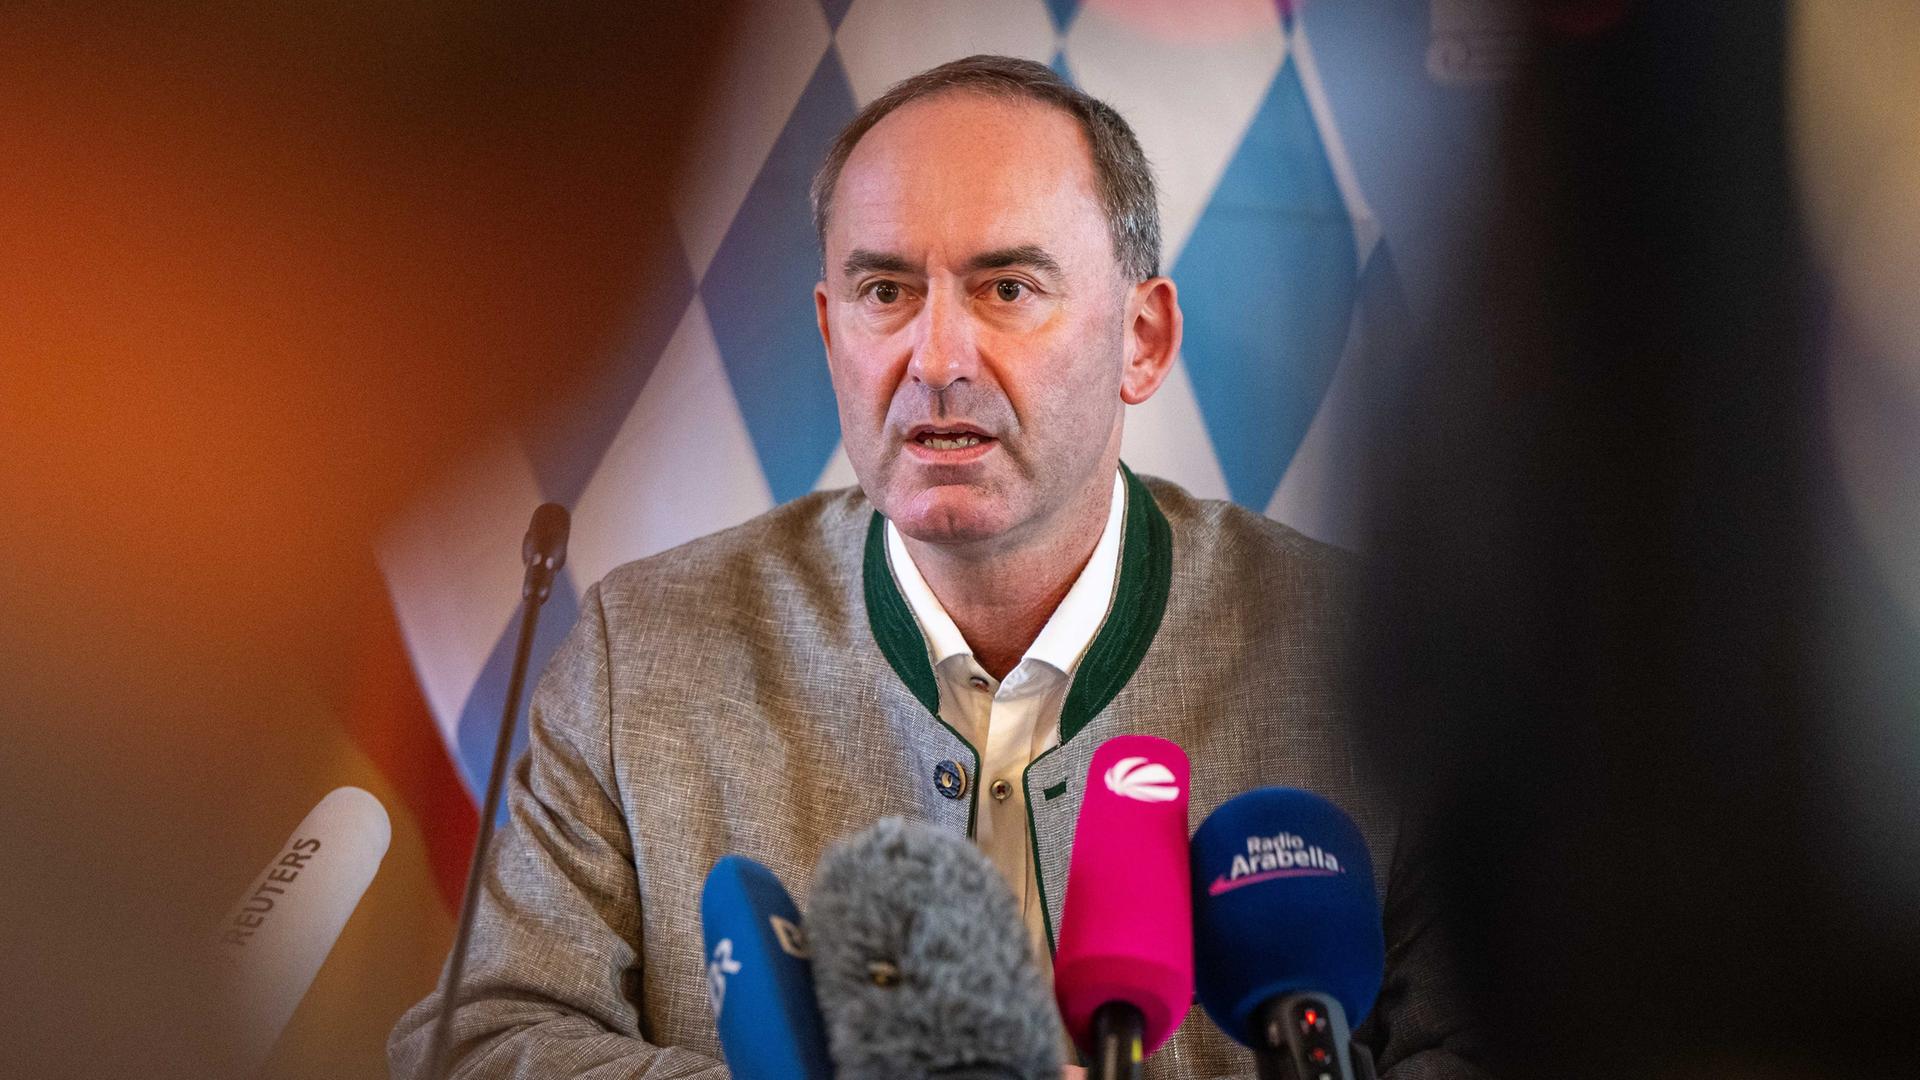 Der stellvertretende bayerische Ministerpräsident Hubert Aiwanger bittet auf einer Pressekonferenz um Entschuldigung und sieht sich als Opfer einer Kampagne.